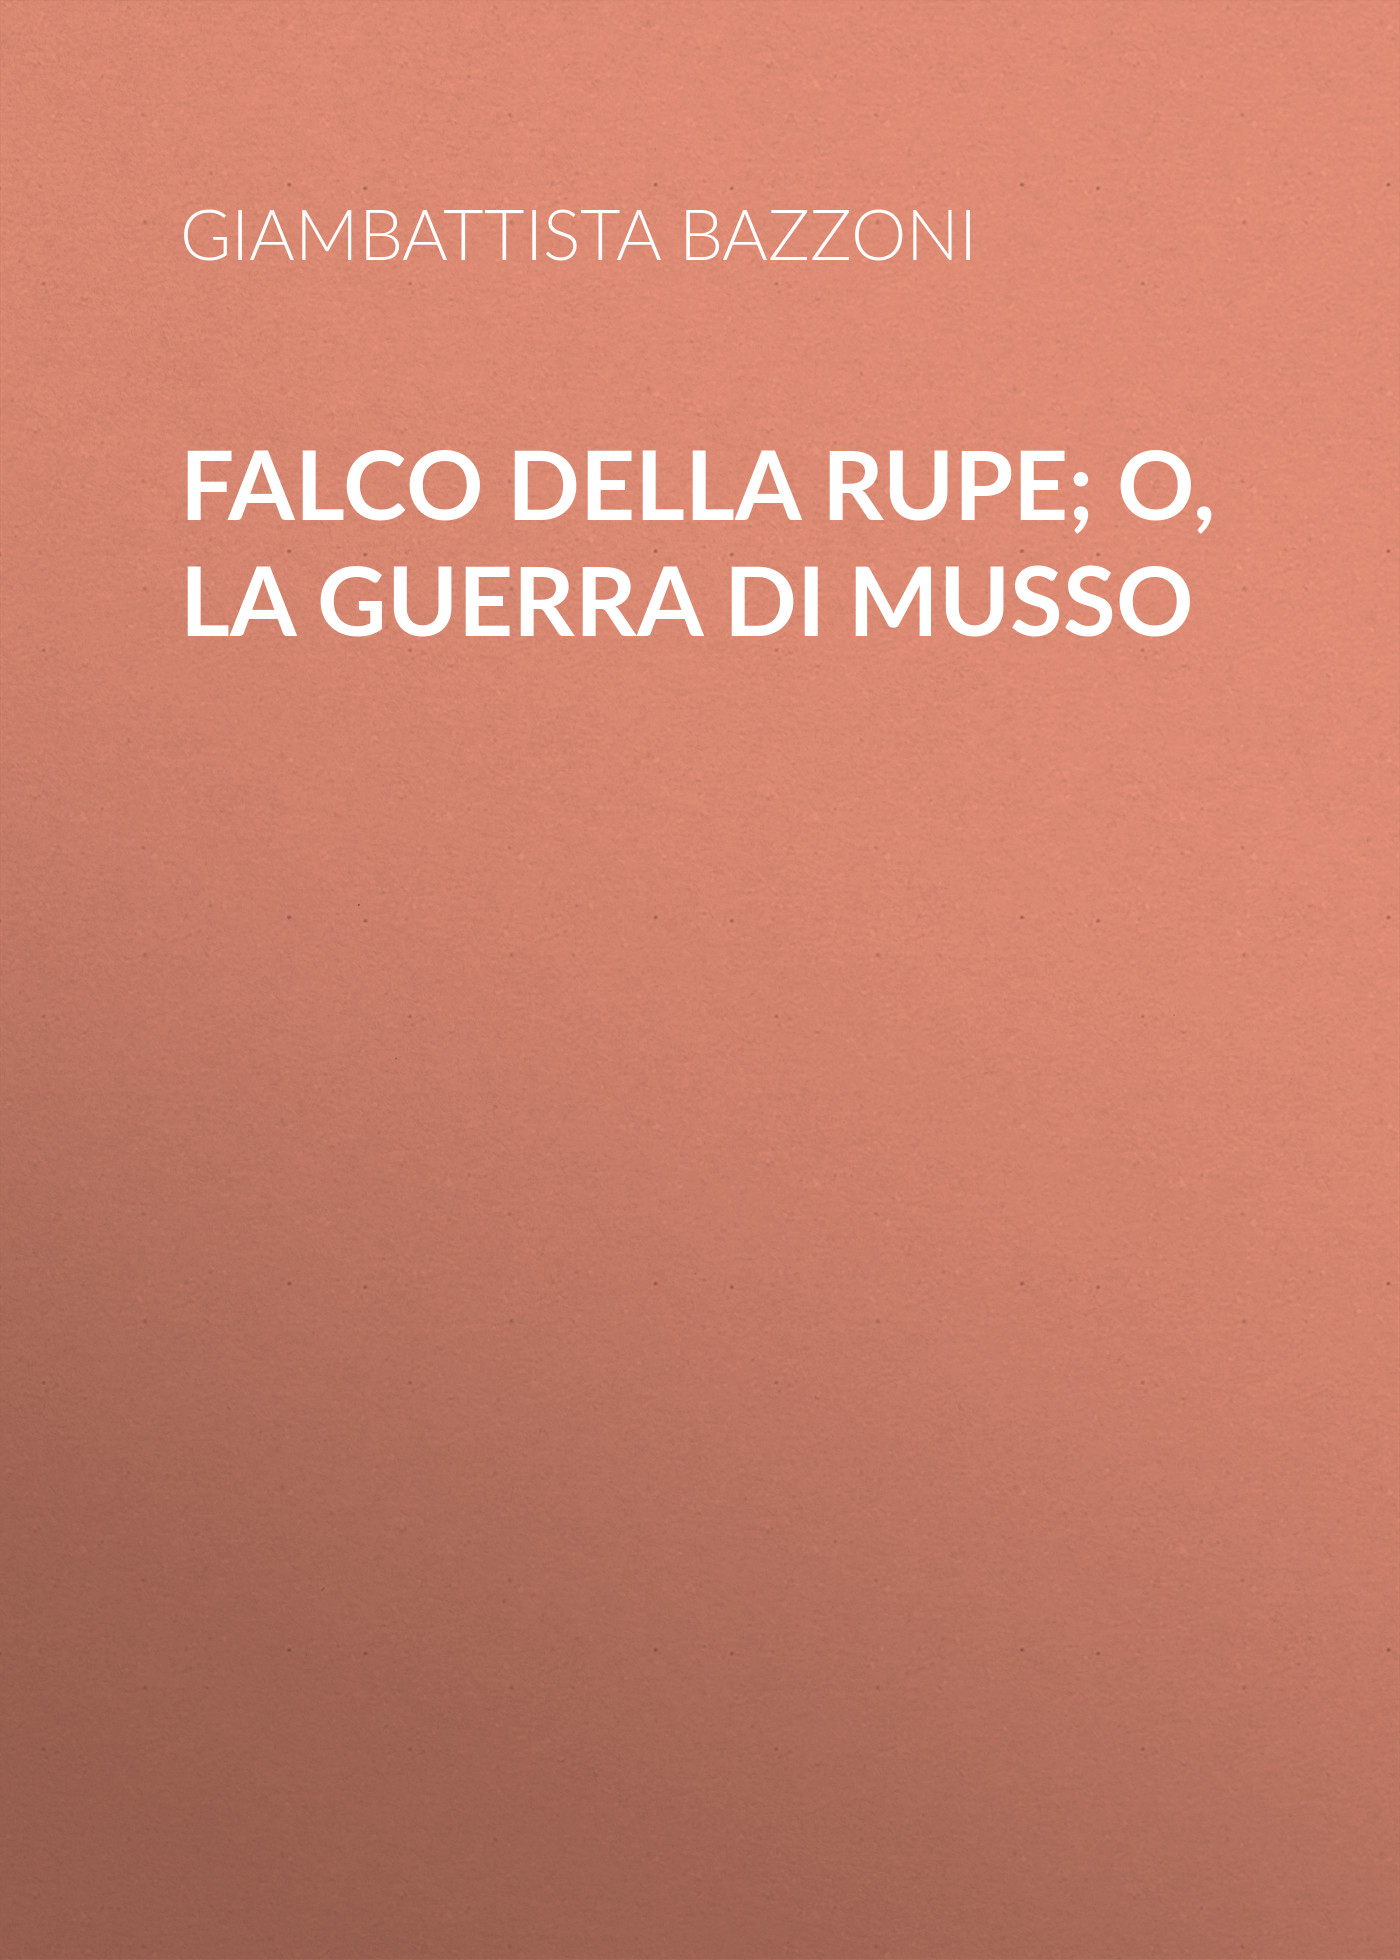 Книга Falco della rupe; O, La guerra di Musso из серии , созданная Giambattista Bazzoni, может относится к жанру Зарубежная старинная литература, Зарубежная классика. Стоимость электронной книги Falco della rupe; O, La guerra di Musso с идентификатором 24177700 составляет 0.90 руб.